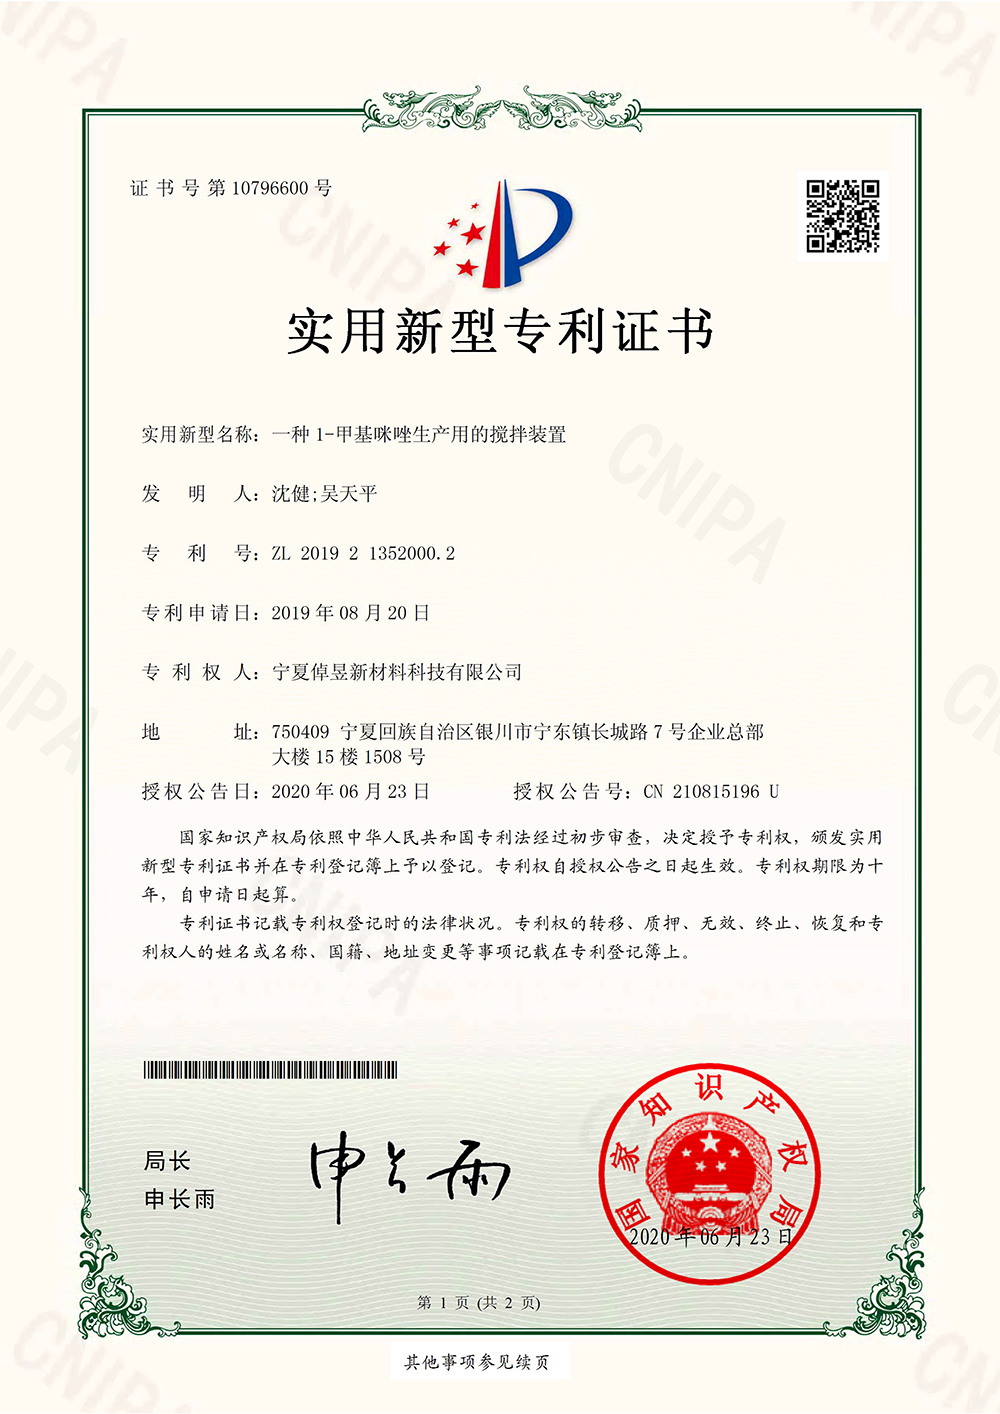 1-甲基咪唑生产用的搅拌装置_上海浩登材料股份有限公司